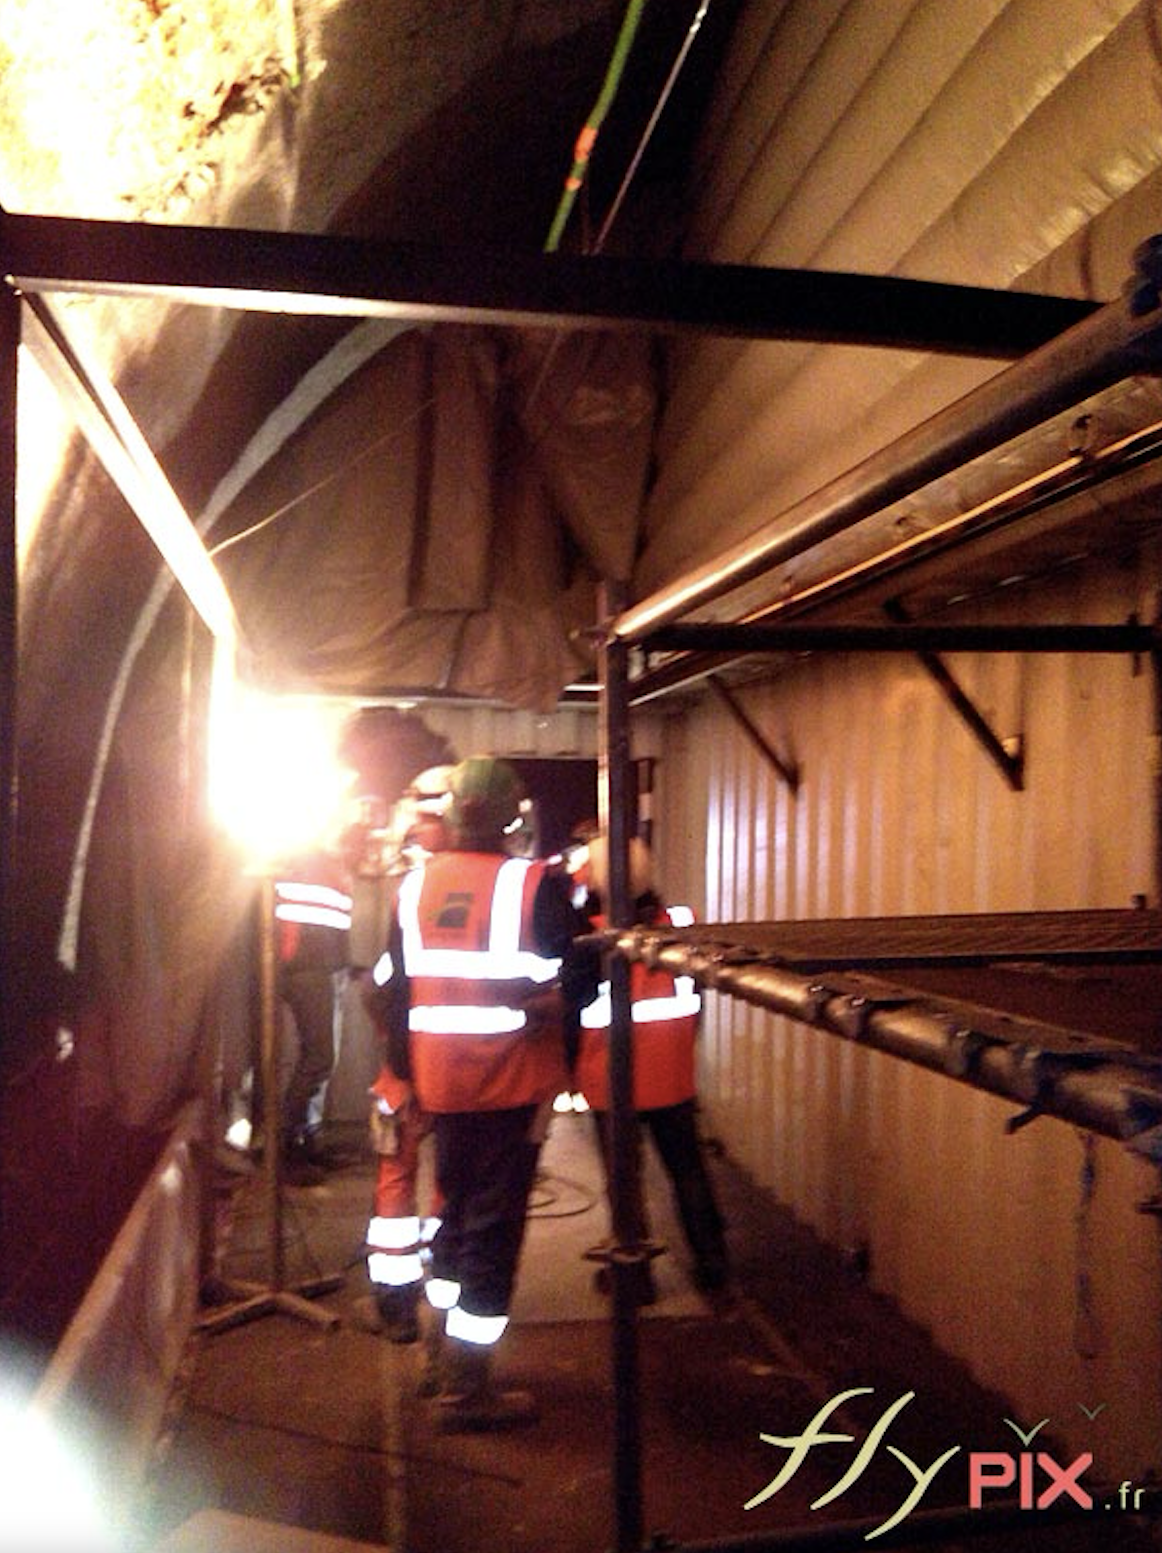 Vue intérieure dans abri gonflable installé pendant l'accomplissement d'un chantier dans un tunnel, pour un métro en milieu urbain, en environnement souterrain.